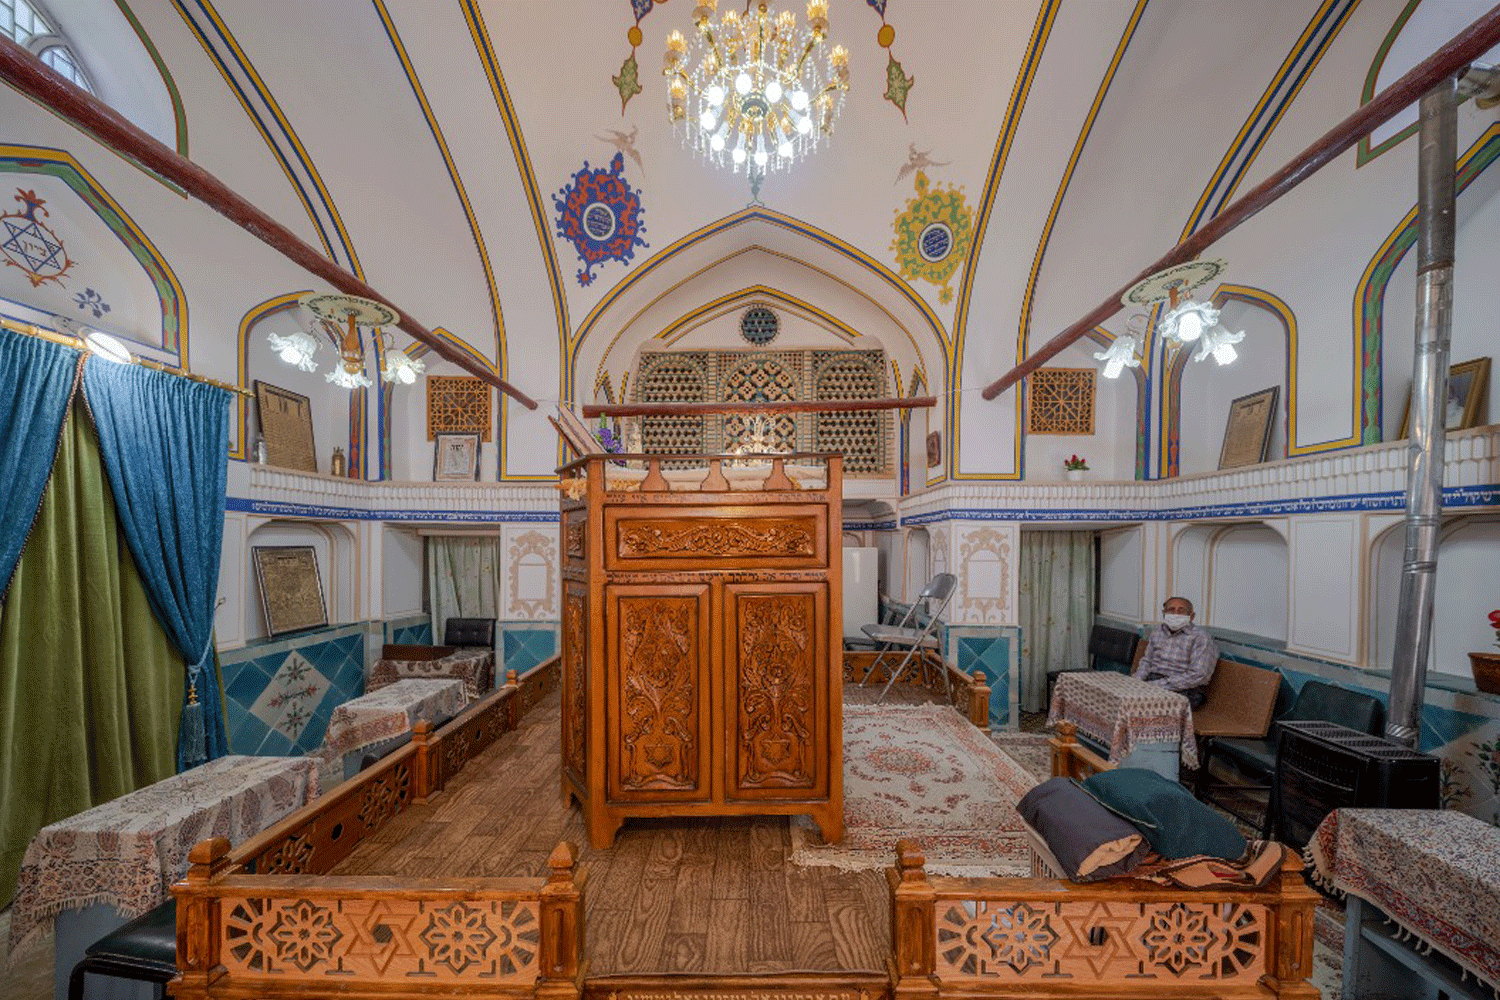 کنیسه یوسف شموئیل شمعون در اصفهان